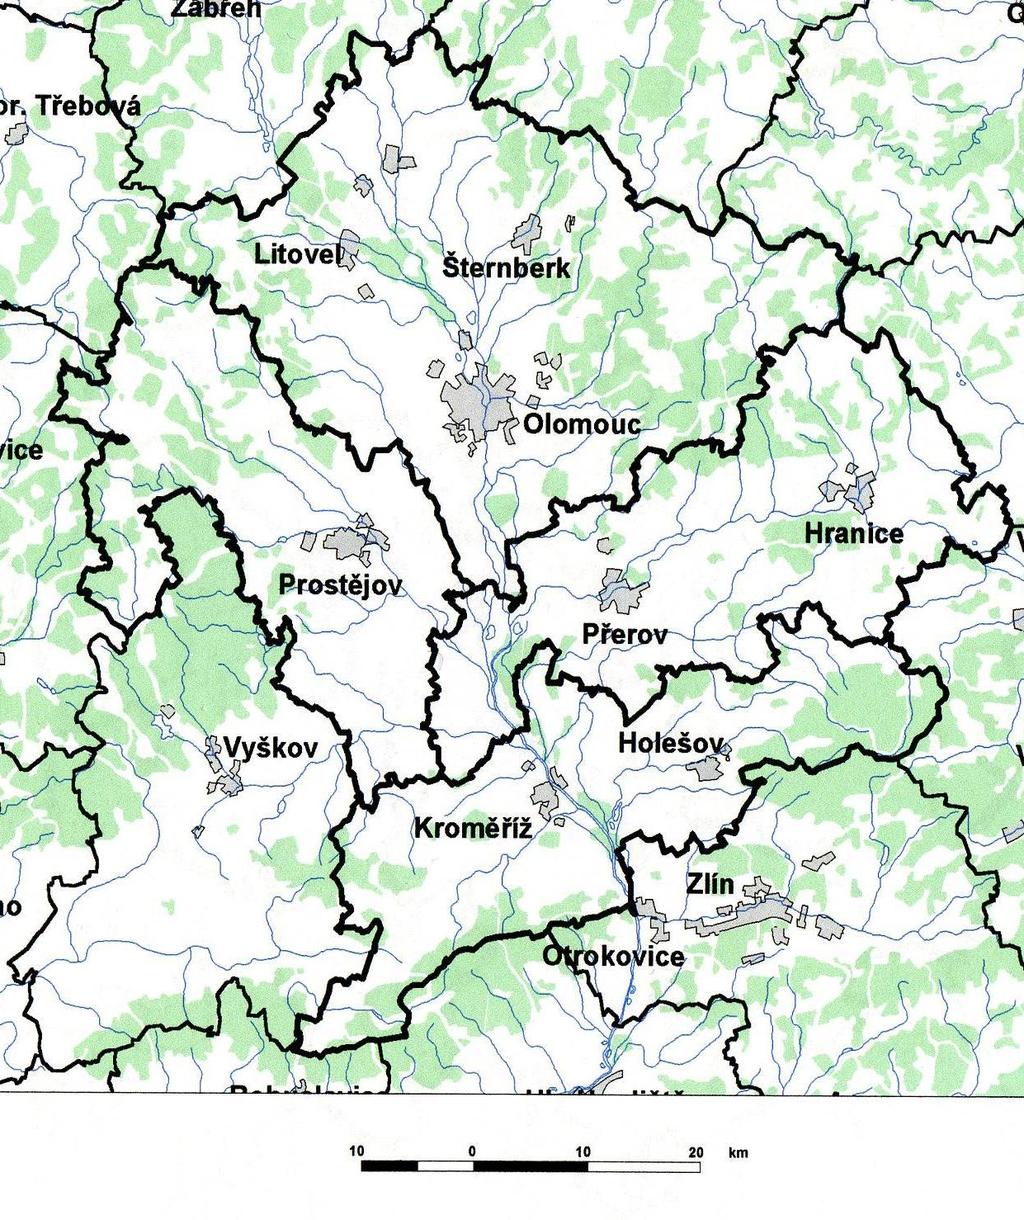 Území střední Morava: OL, PR, PV, KM Luhy: Litovelské Pomoraví Chropyňský luh Pobečví Vrchovina a pahorkatiny: Nízký Jeseník